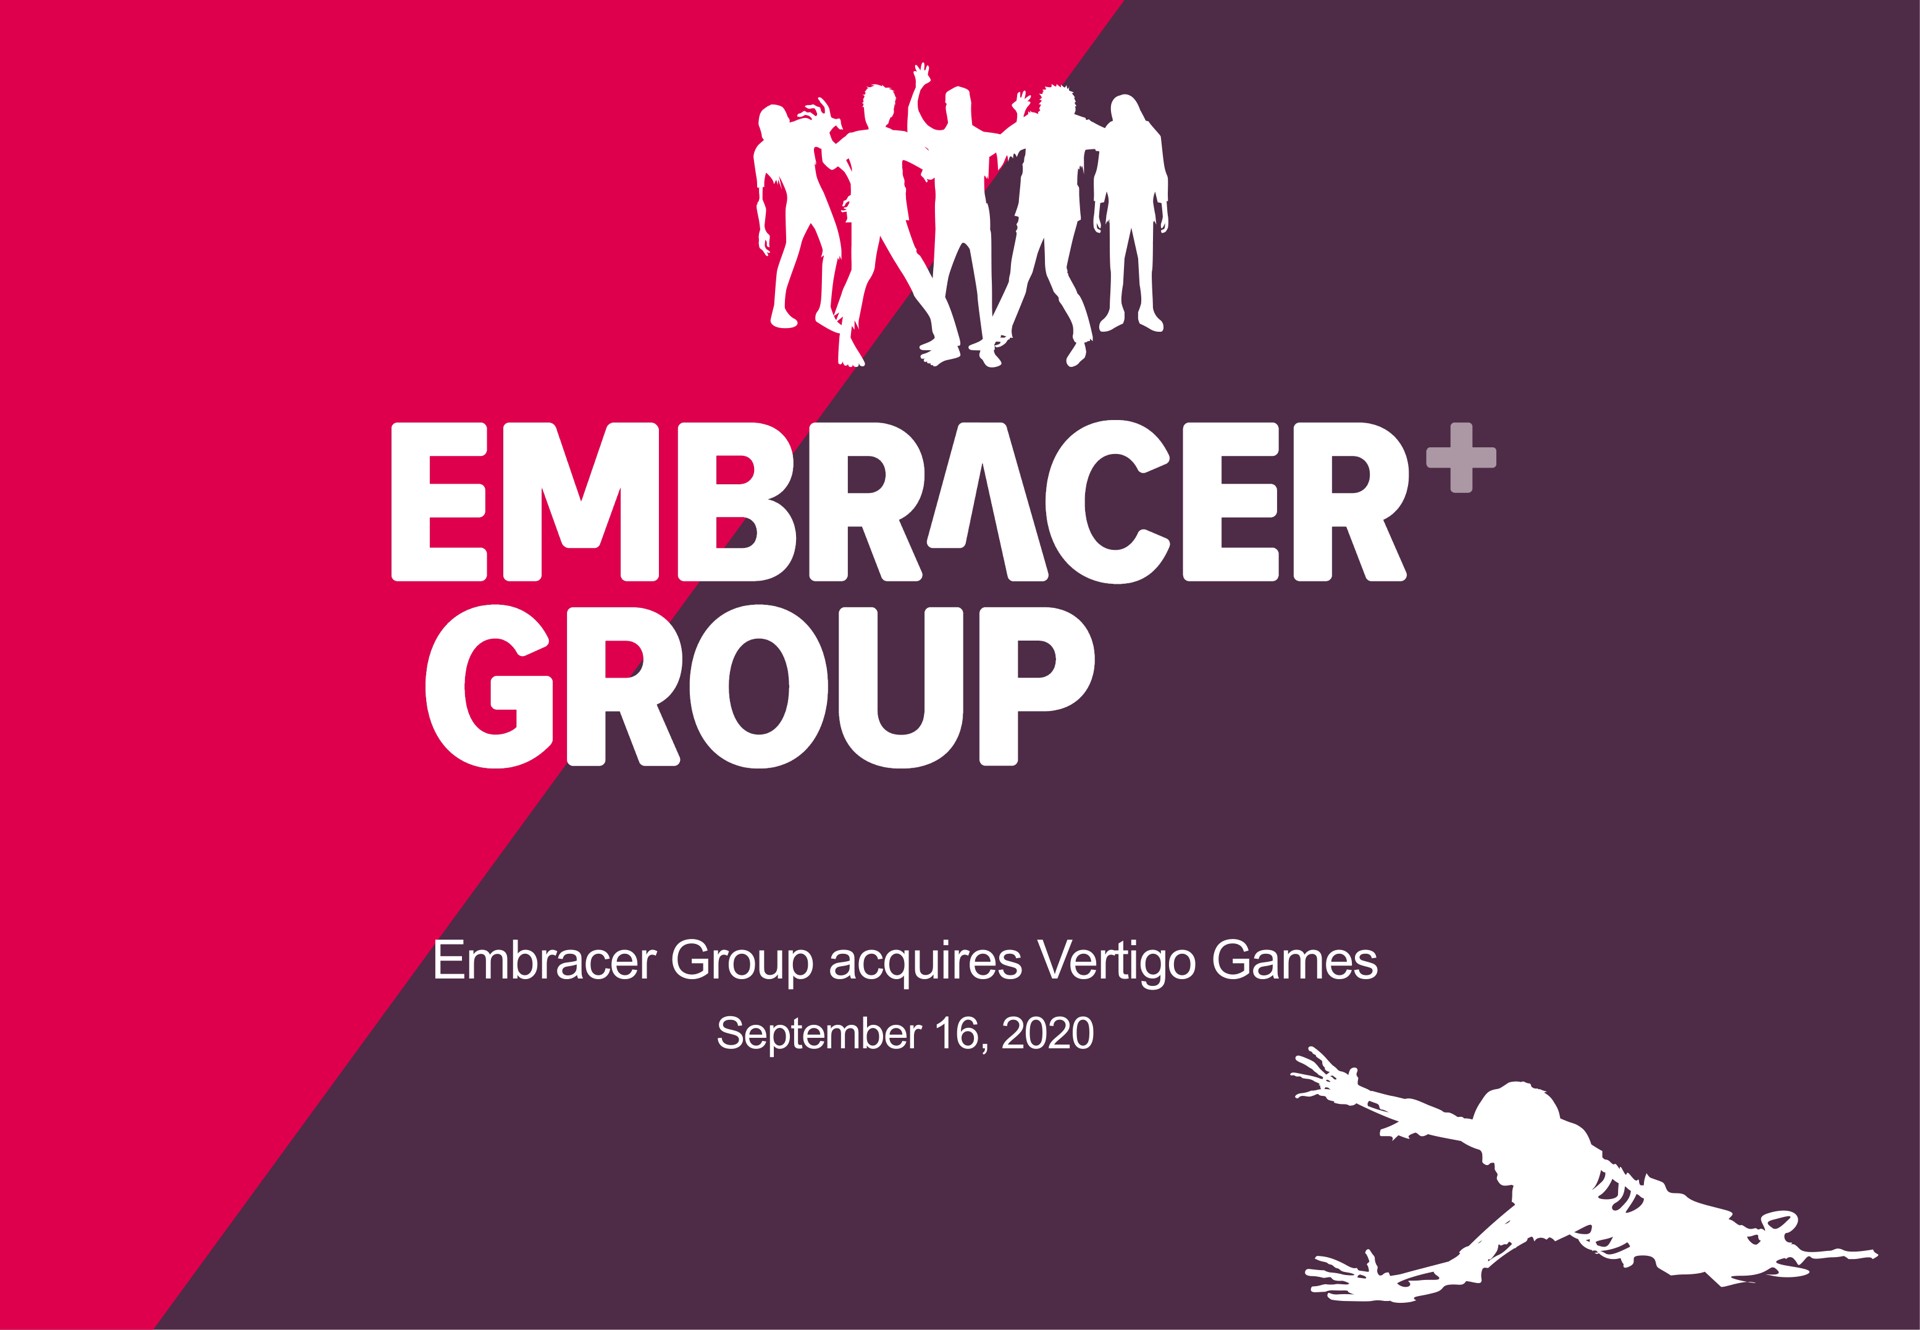 embracer group acquires vertigo games | Embracer Group